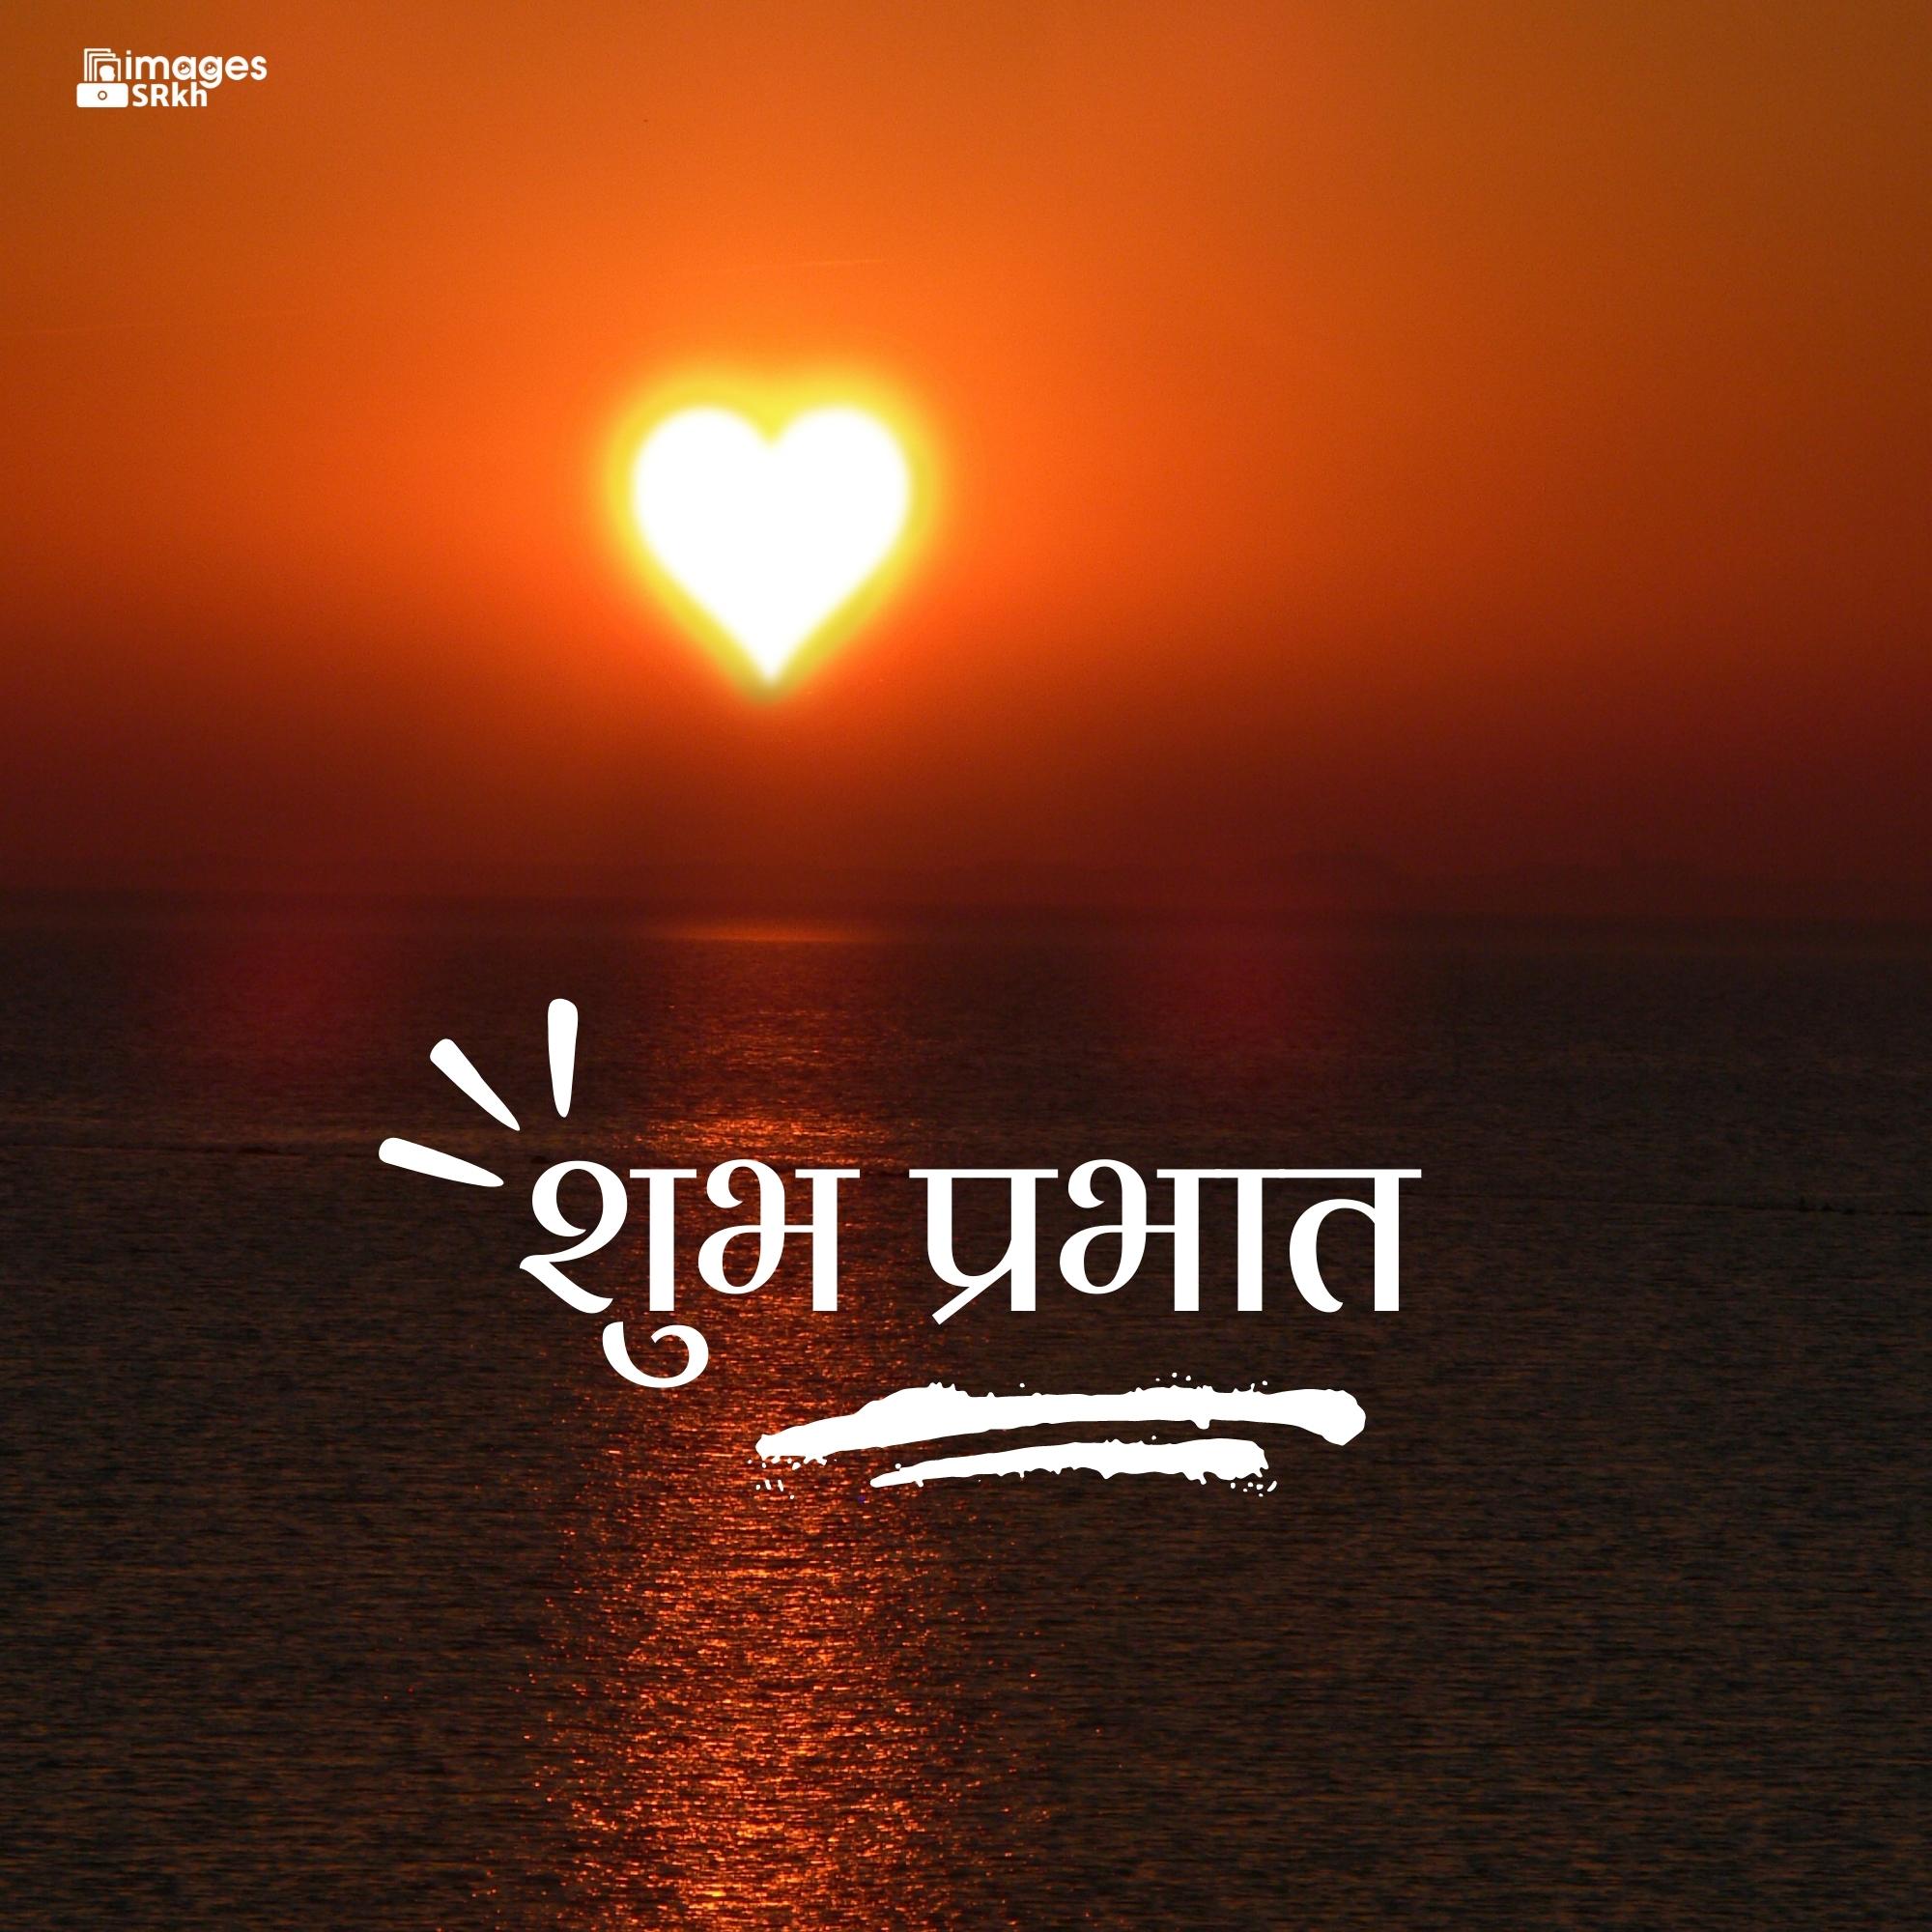 Love Hindi Good Morning Hd Images